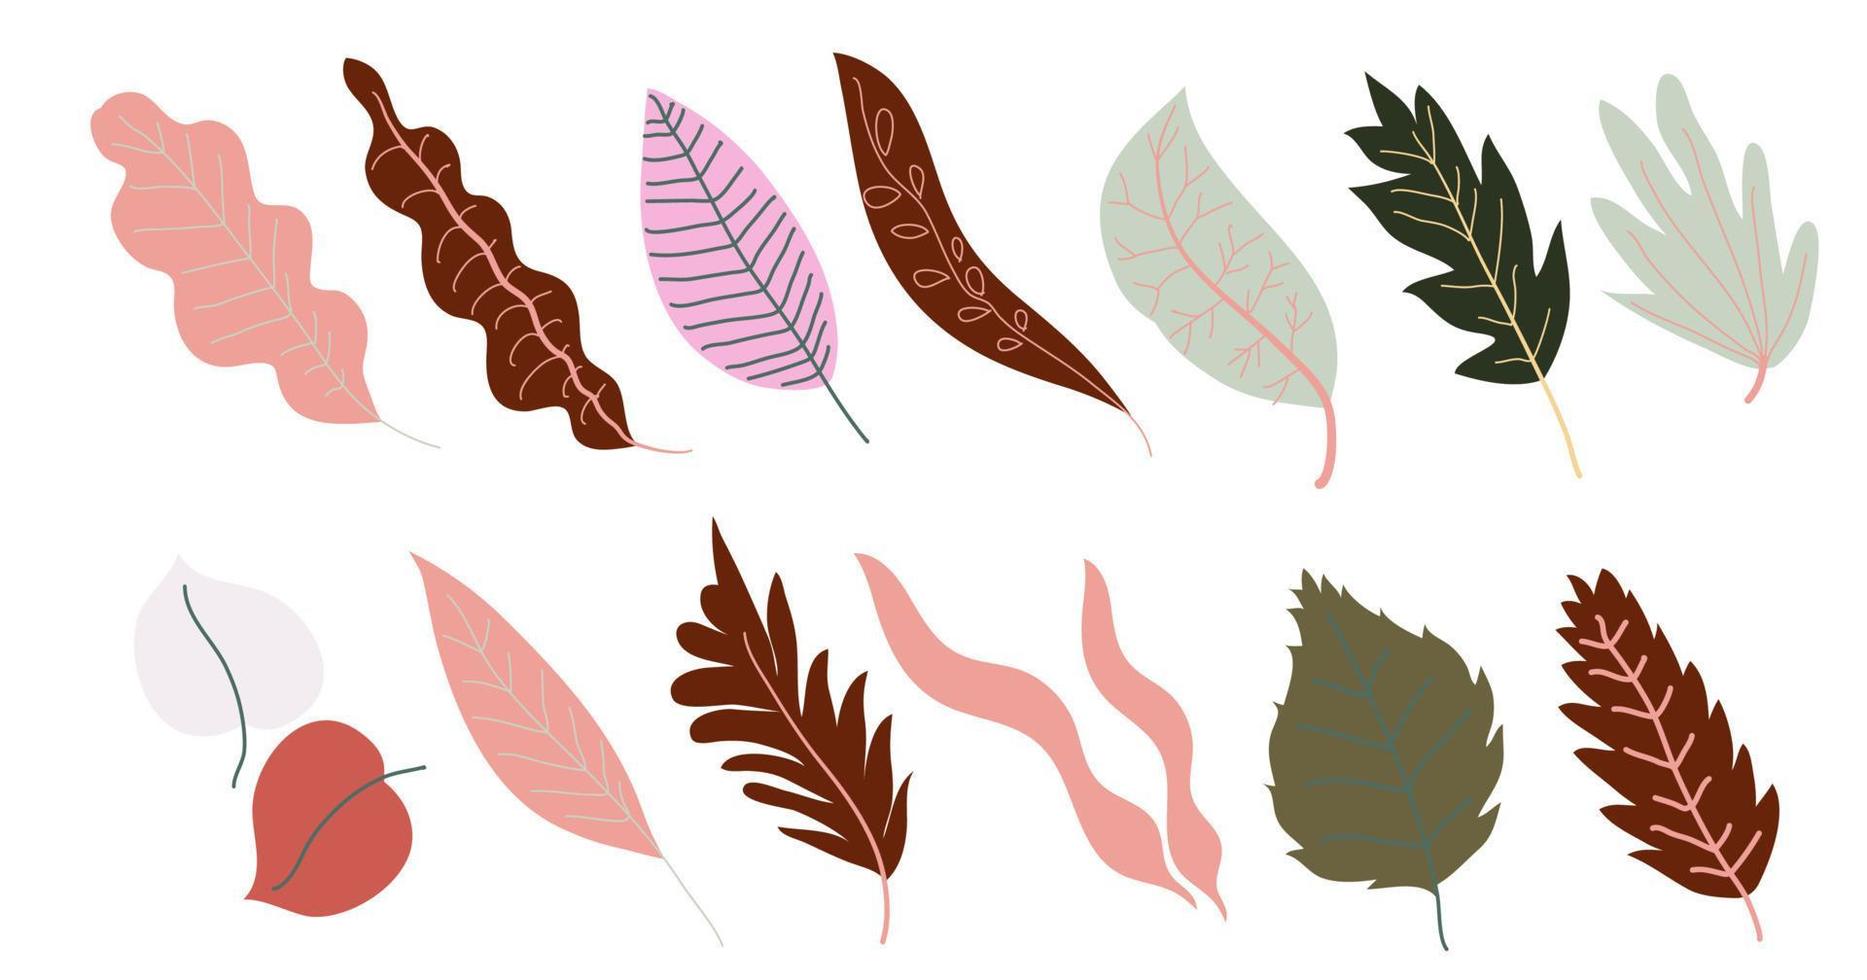 hojas de otoño, follaje y ramas leafage vector